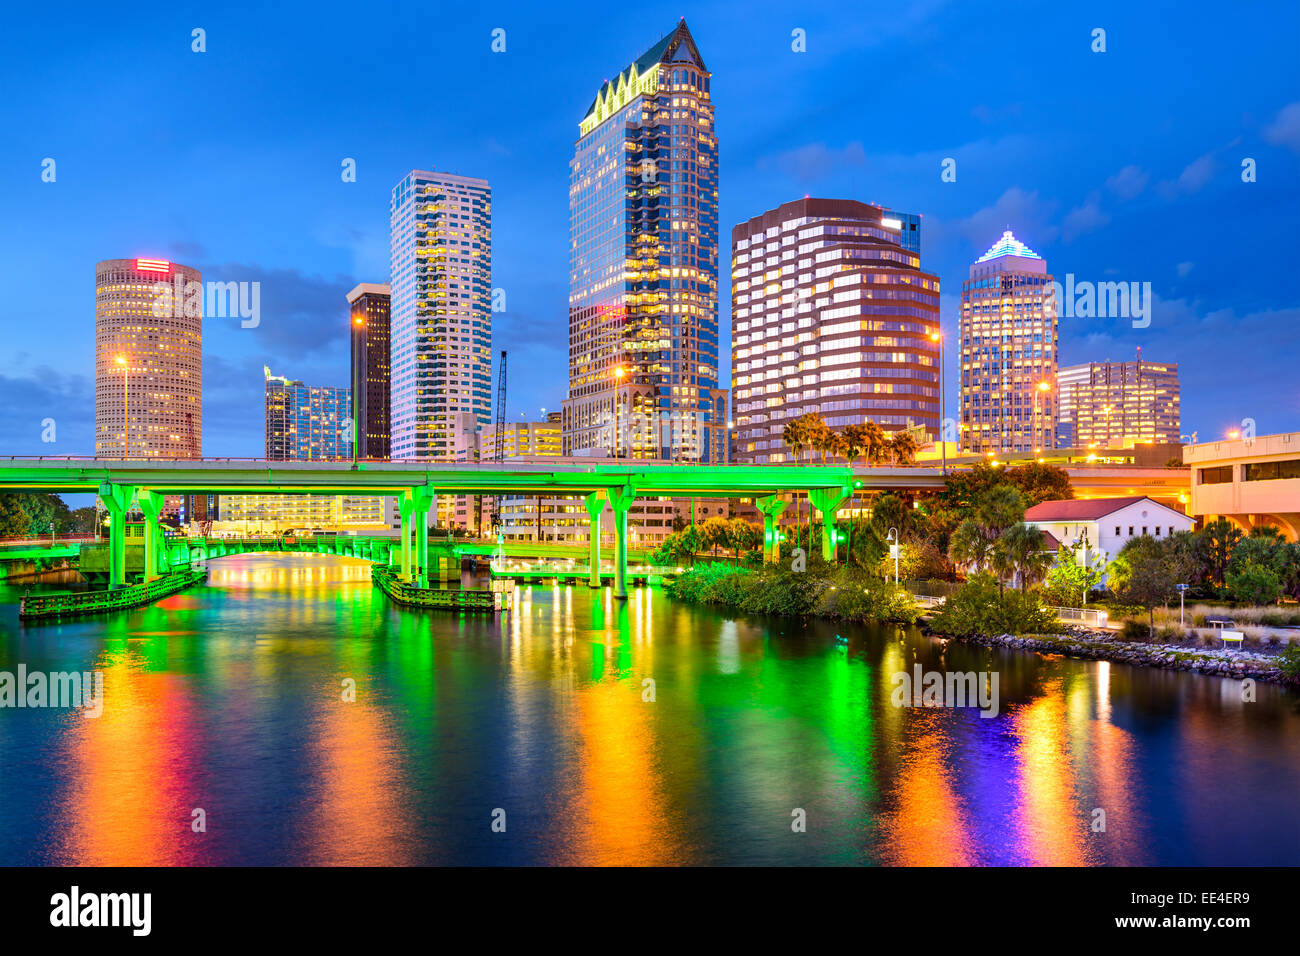 Tampa, Florida, EE.UU. el centro de la ciudad al río Hillsborough. Foto de stock